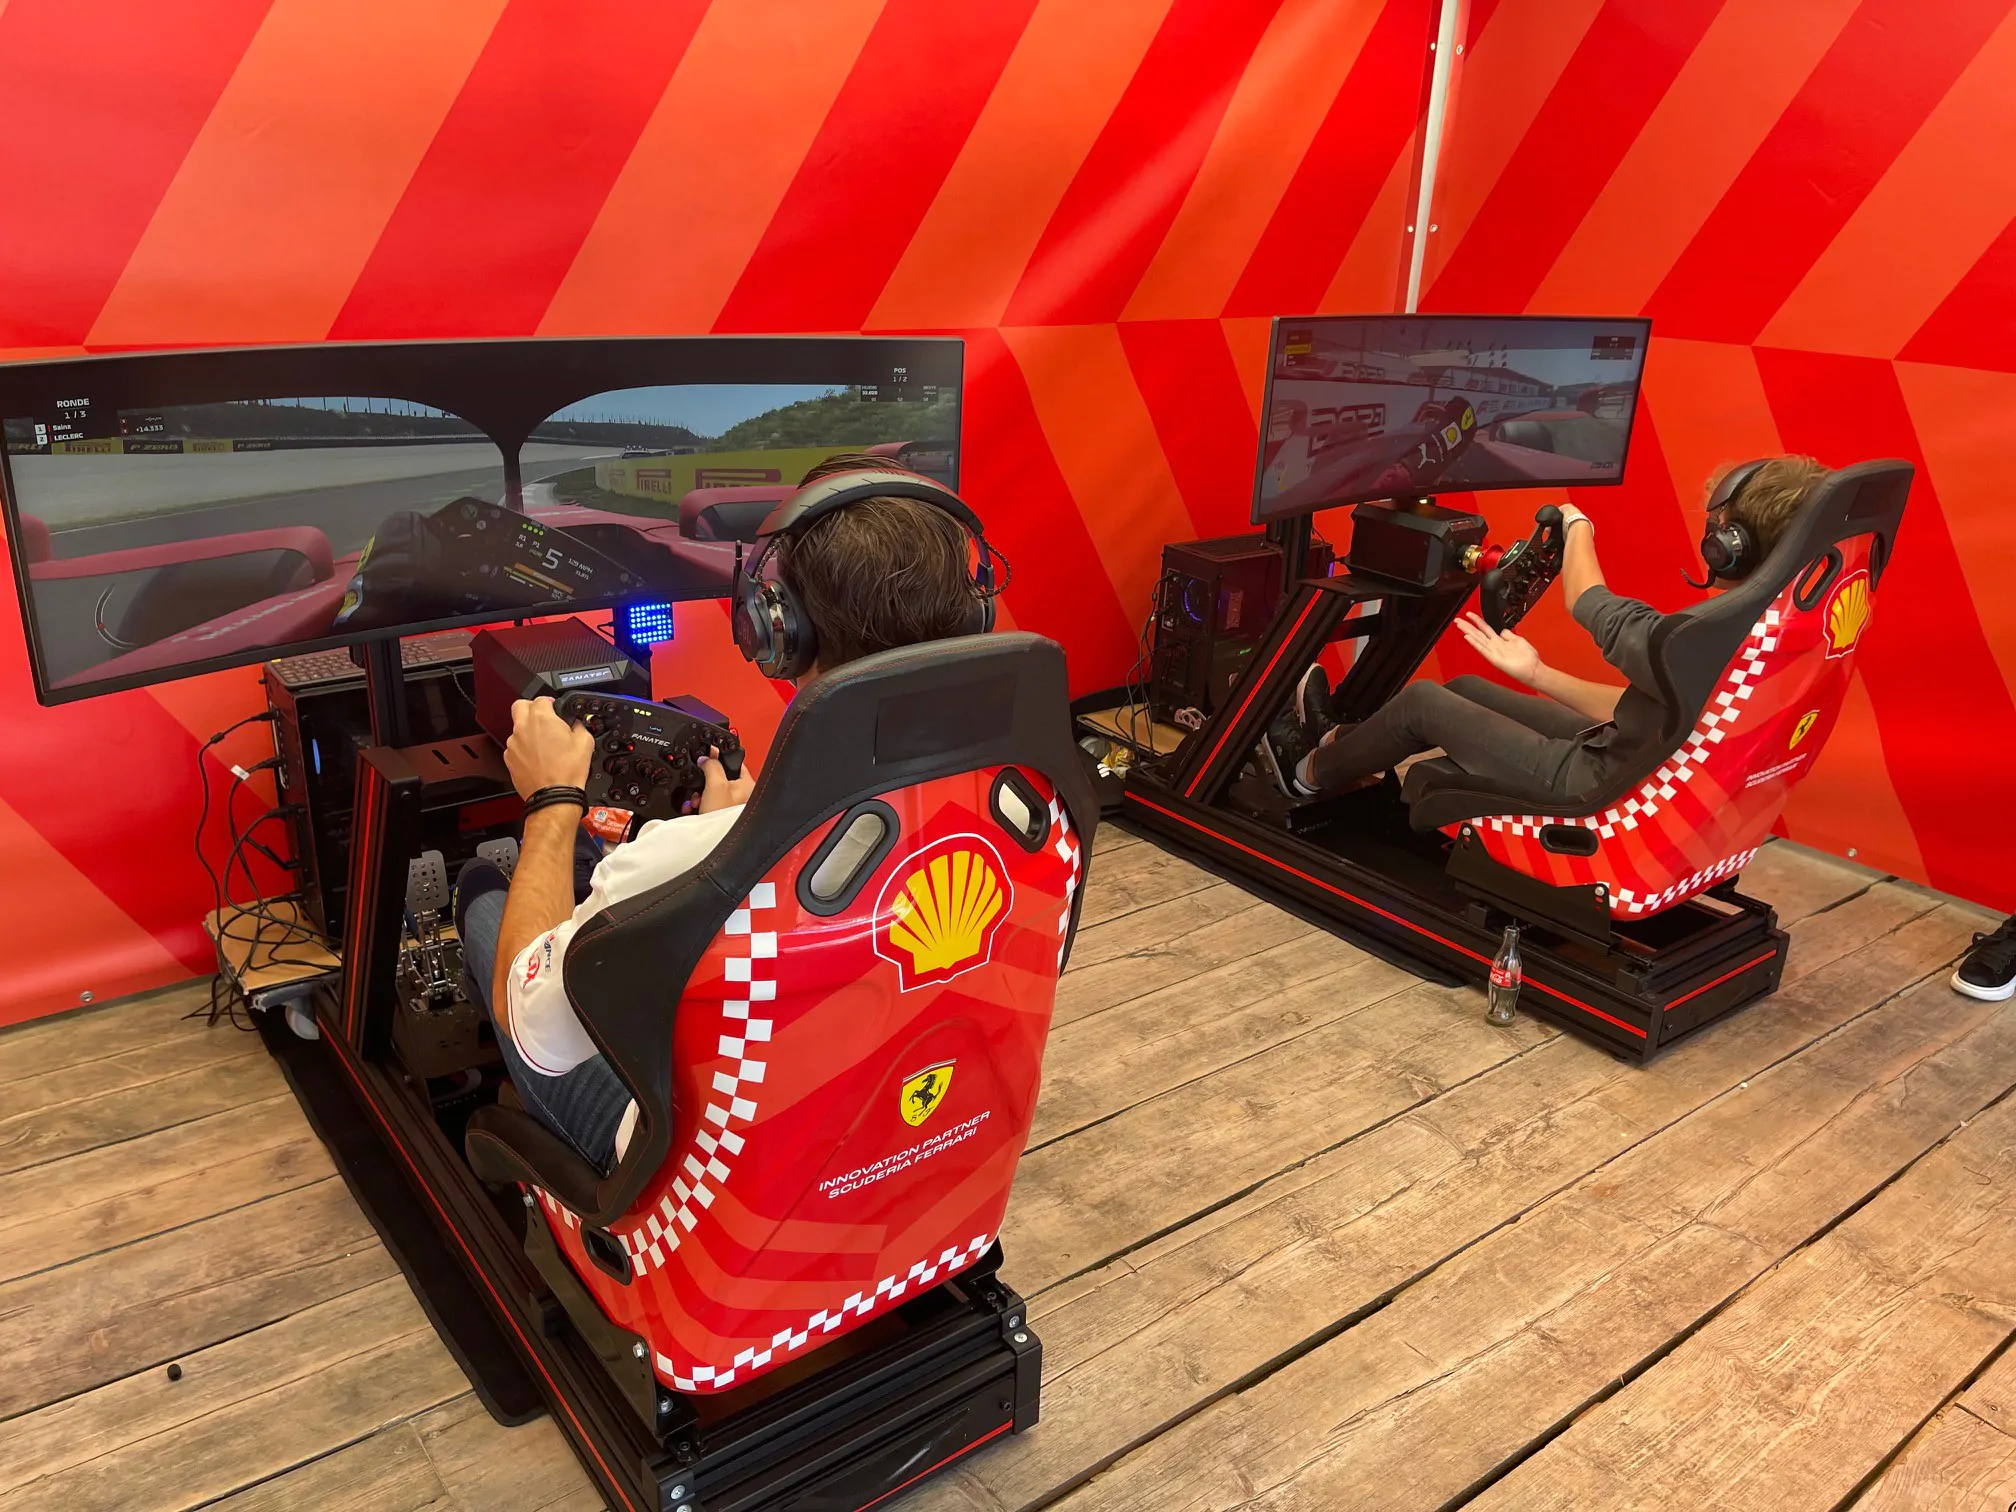 Ferrari Race simulators